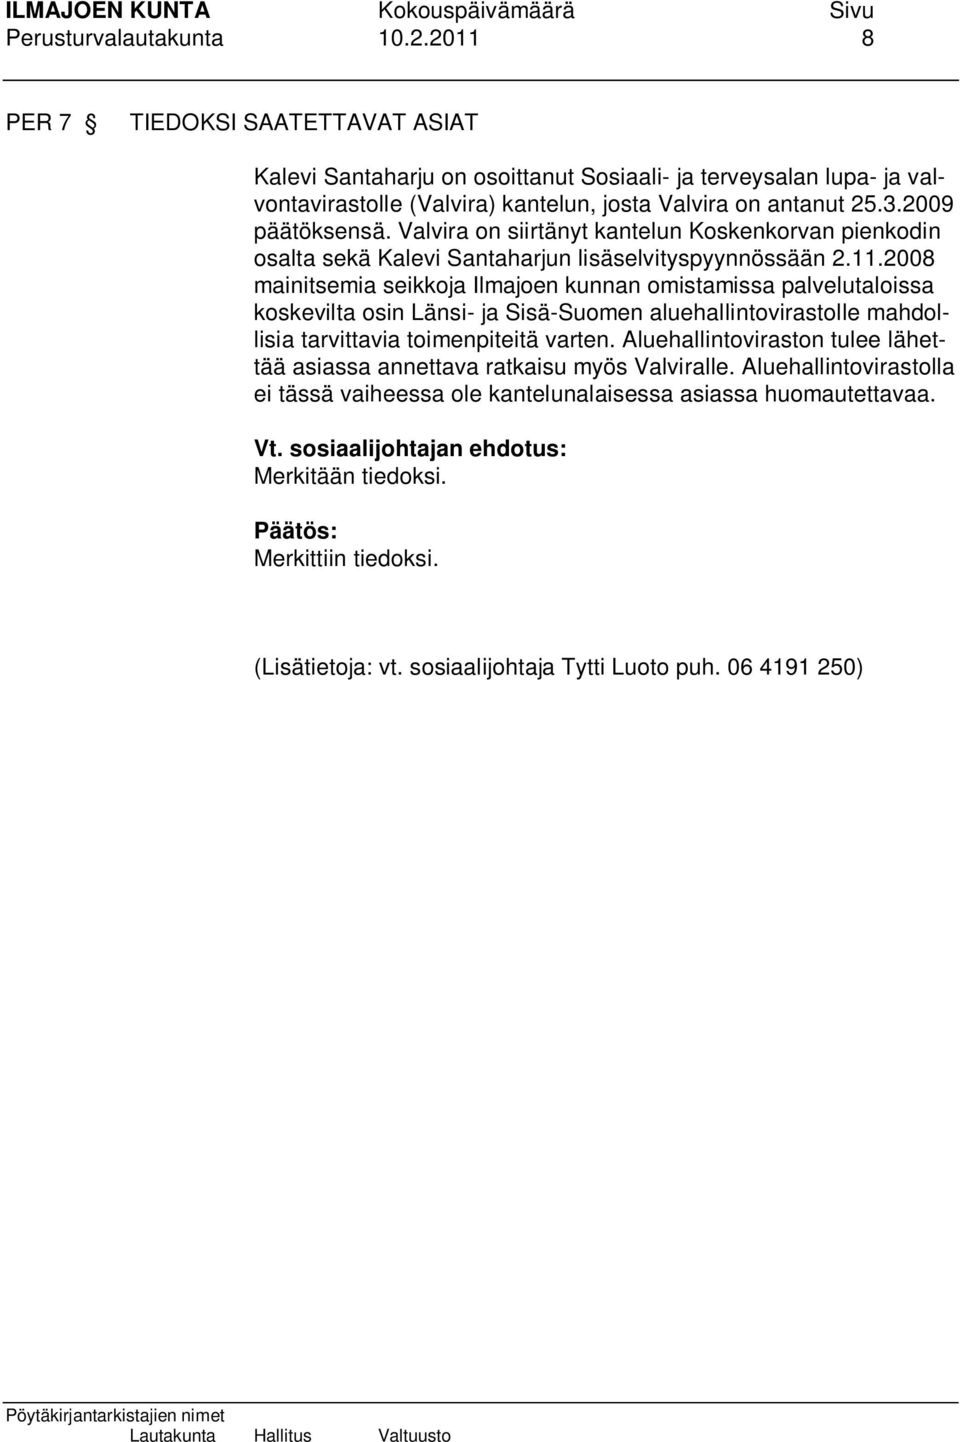 Valvira on siirtänyt kantelun Koskenkorvan pienkodin osalta sekä Kalevi Santaharjun lisäselvityspyynnössään 2.11.